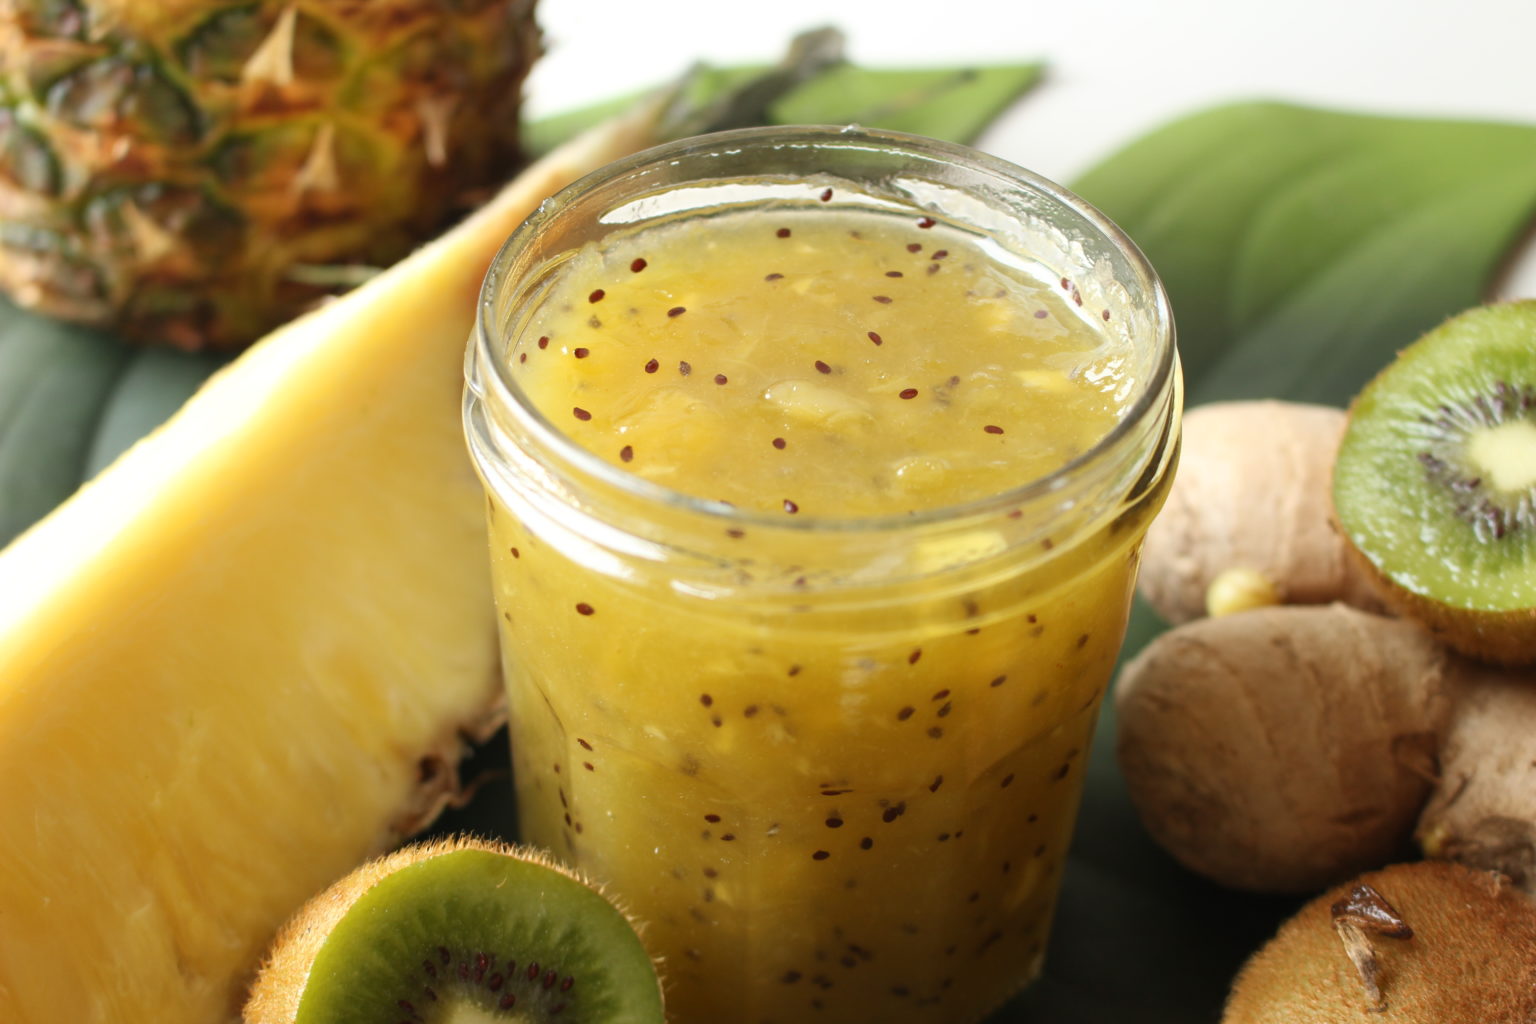 Confiture de kiwis, ananas et gingembre - Spicy Ananas